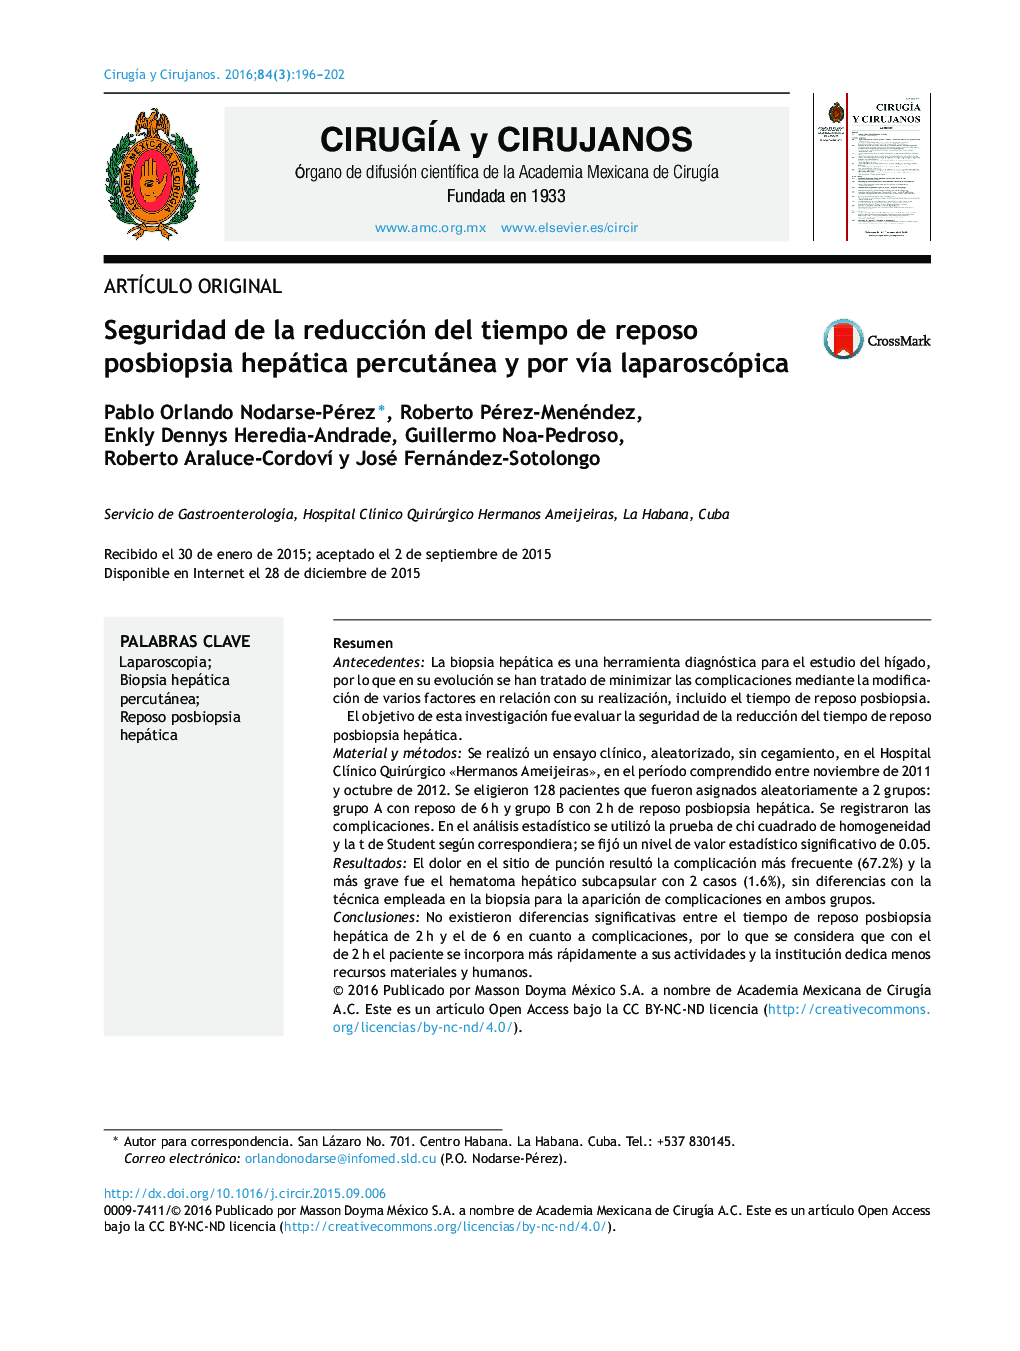 Seguridad de la reducción del tiempo de reposo posbiopsia hepática percutánea y por vía laparoscópica